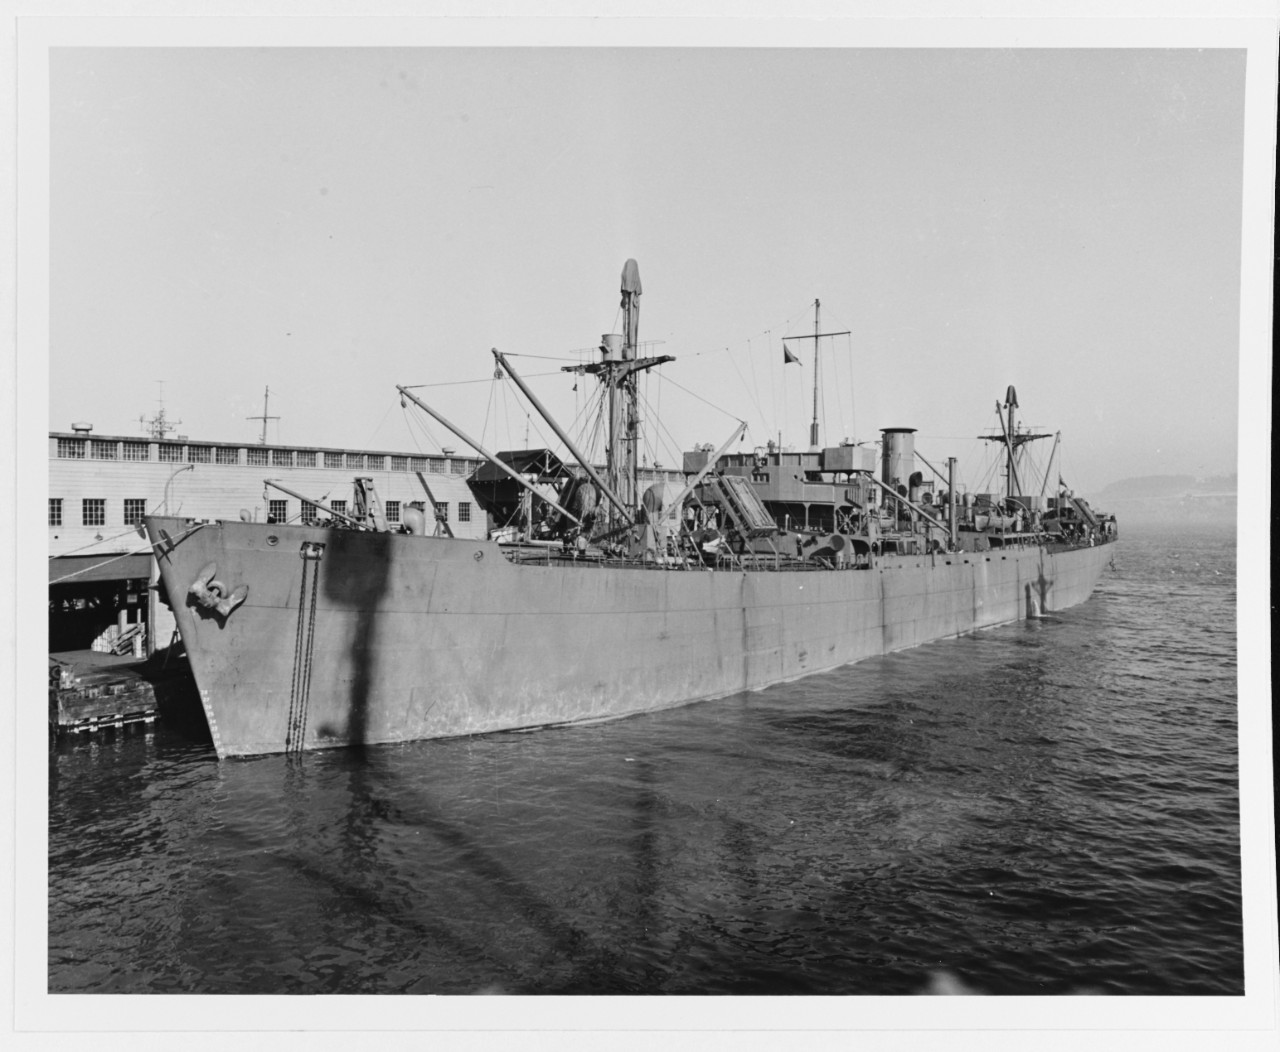 S.S. FORT LATRAIT (British Merchant Freighter, 1942-1972